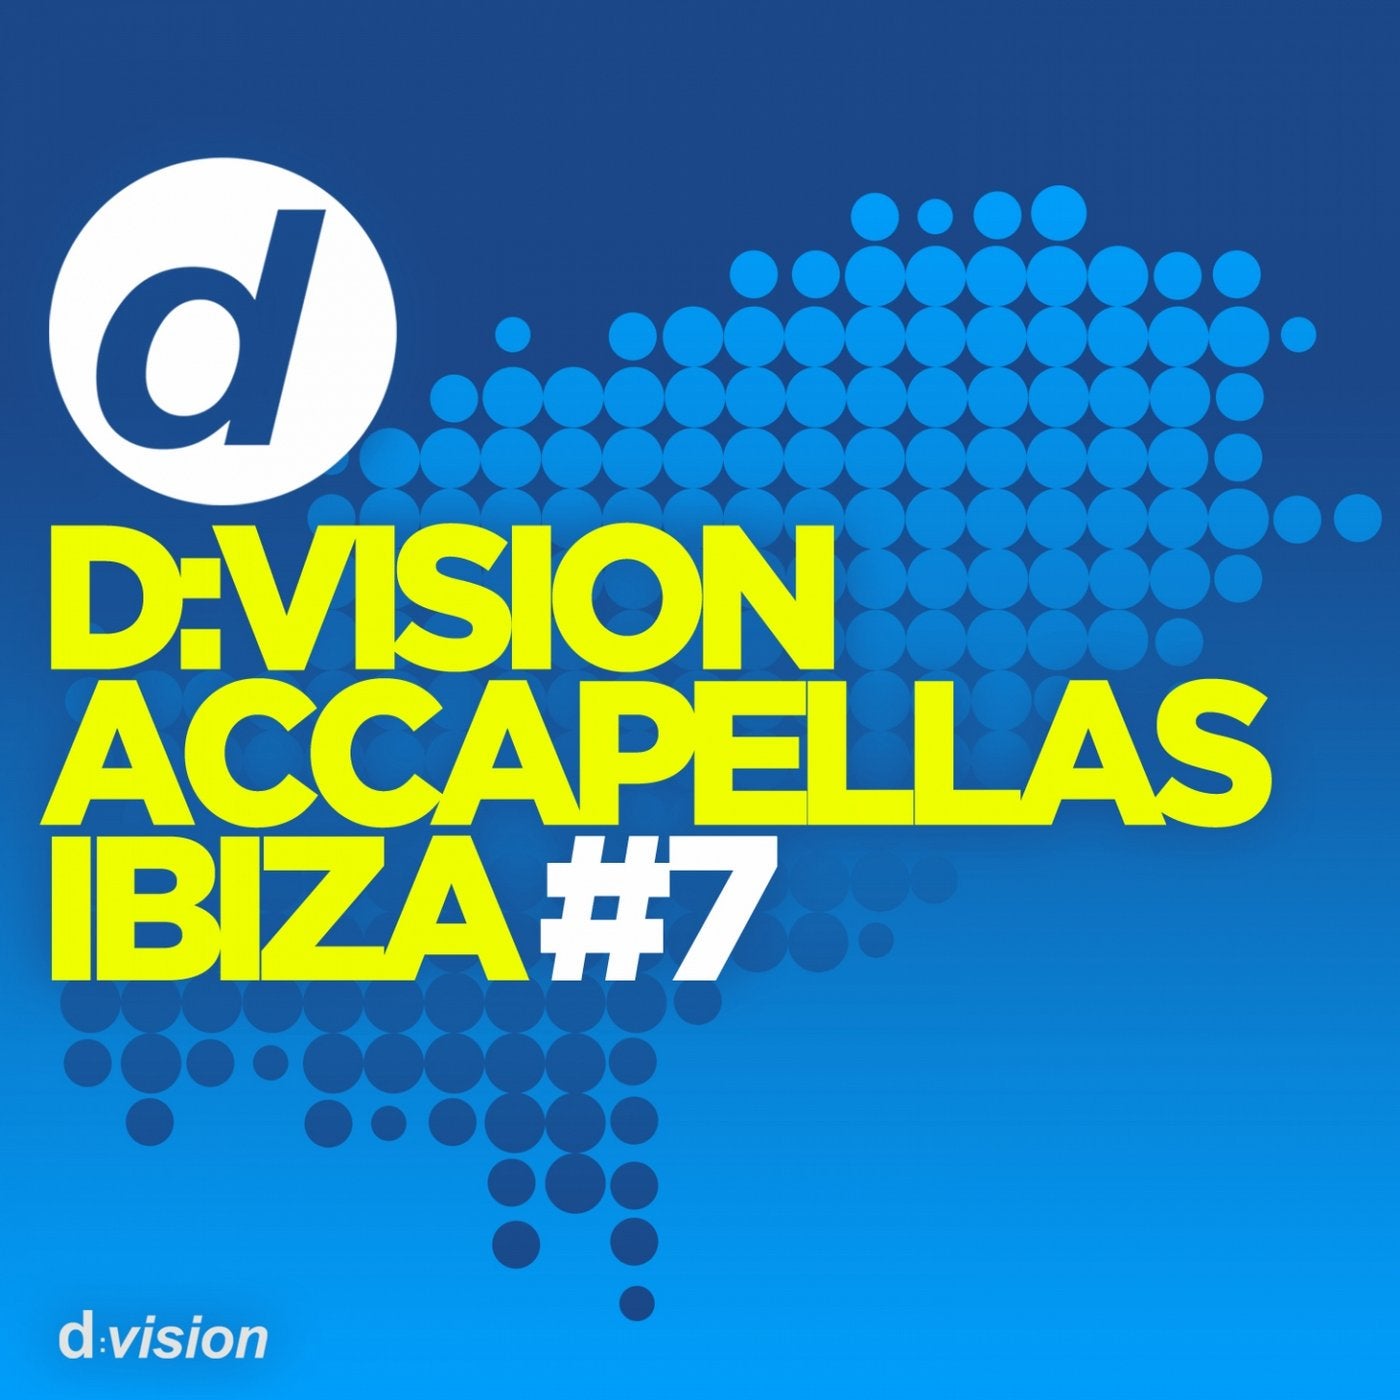 D: Vision Accapellas Ibiza #7